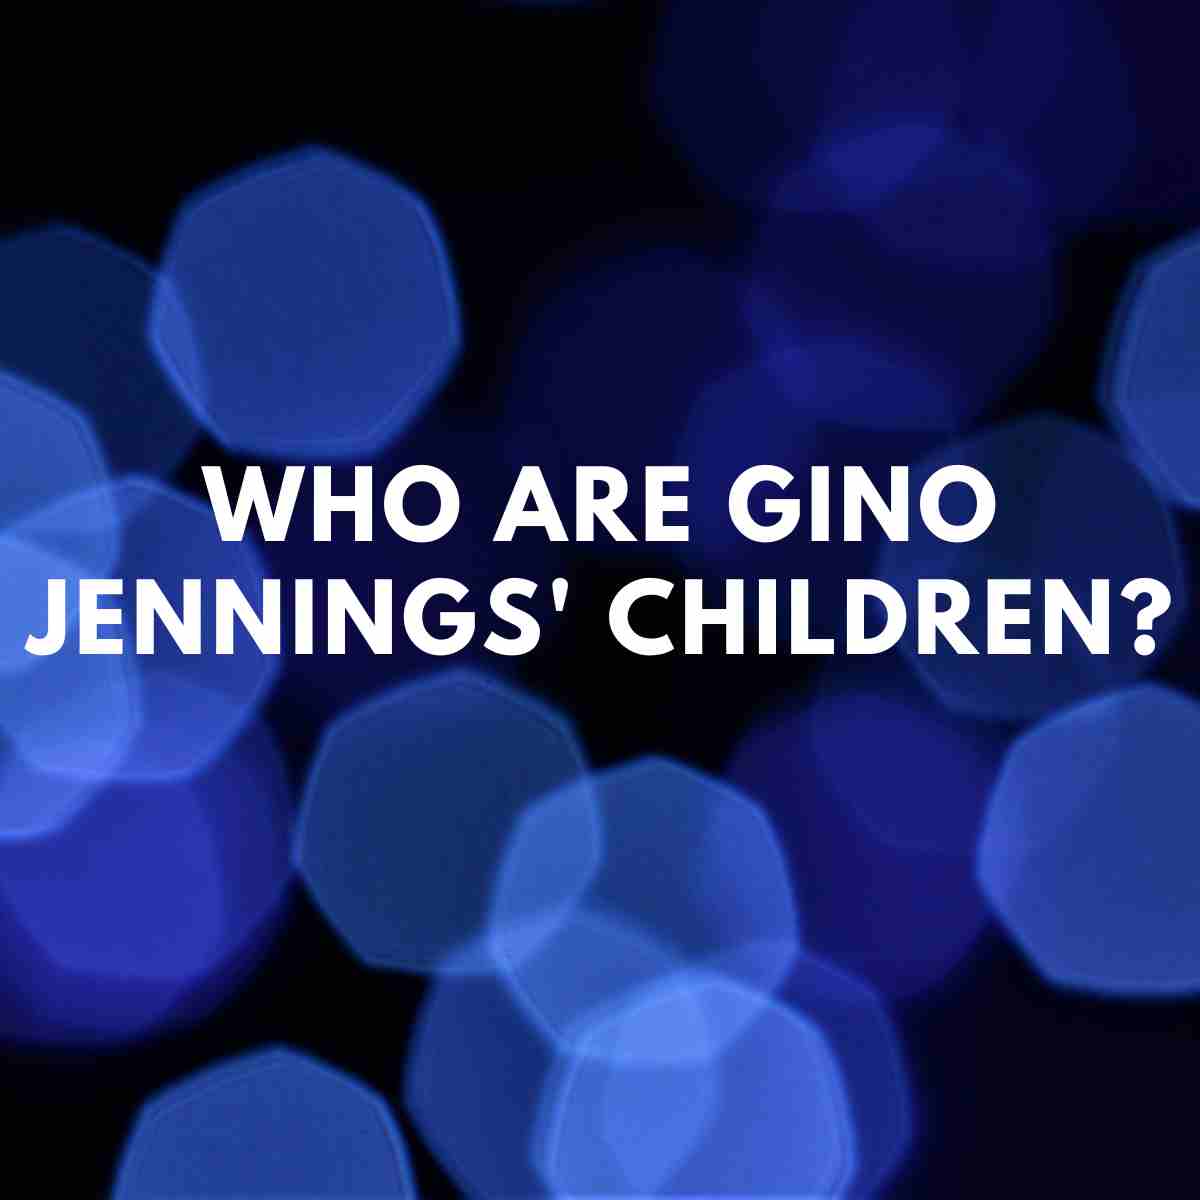 Who are Gino Jennings' children